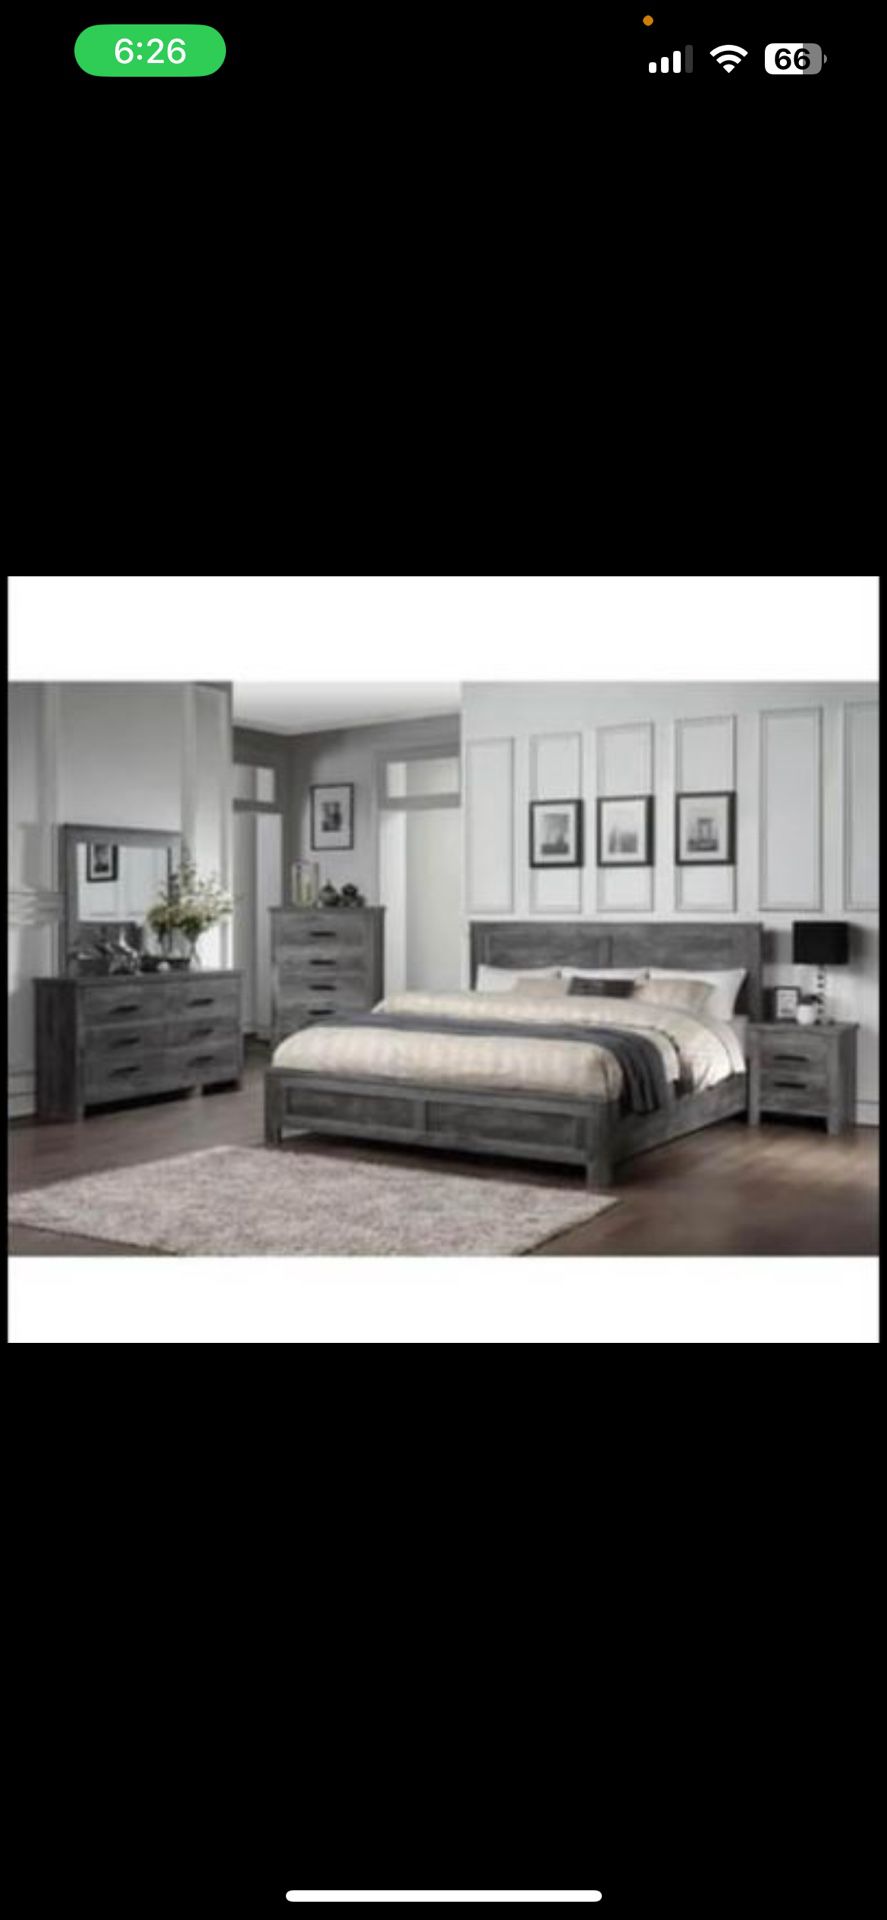  Gray queen bedroom set